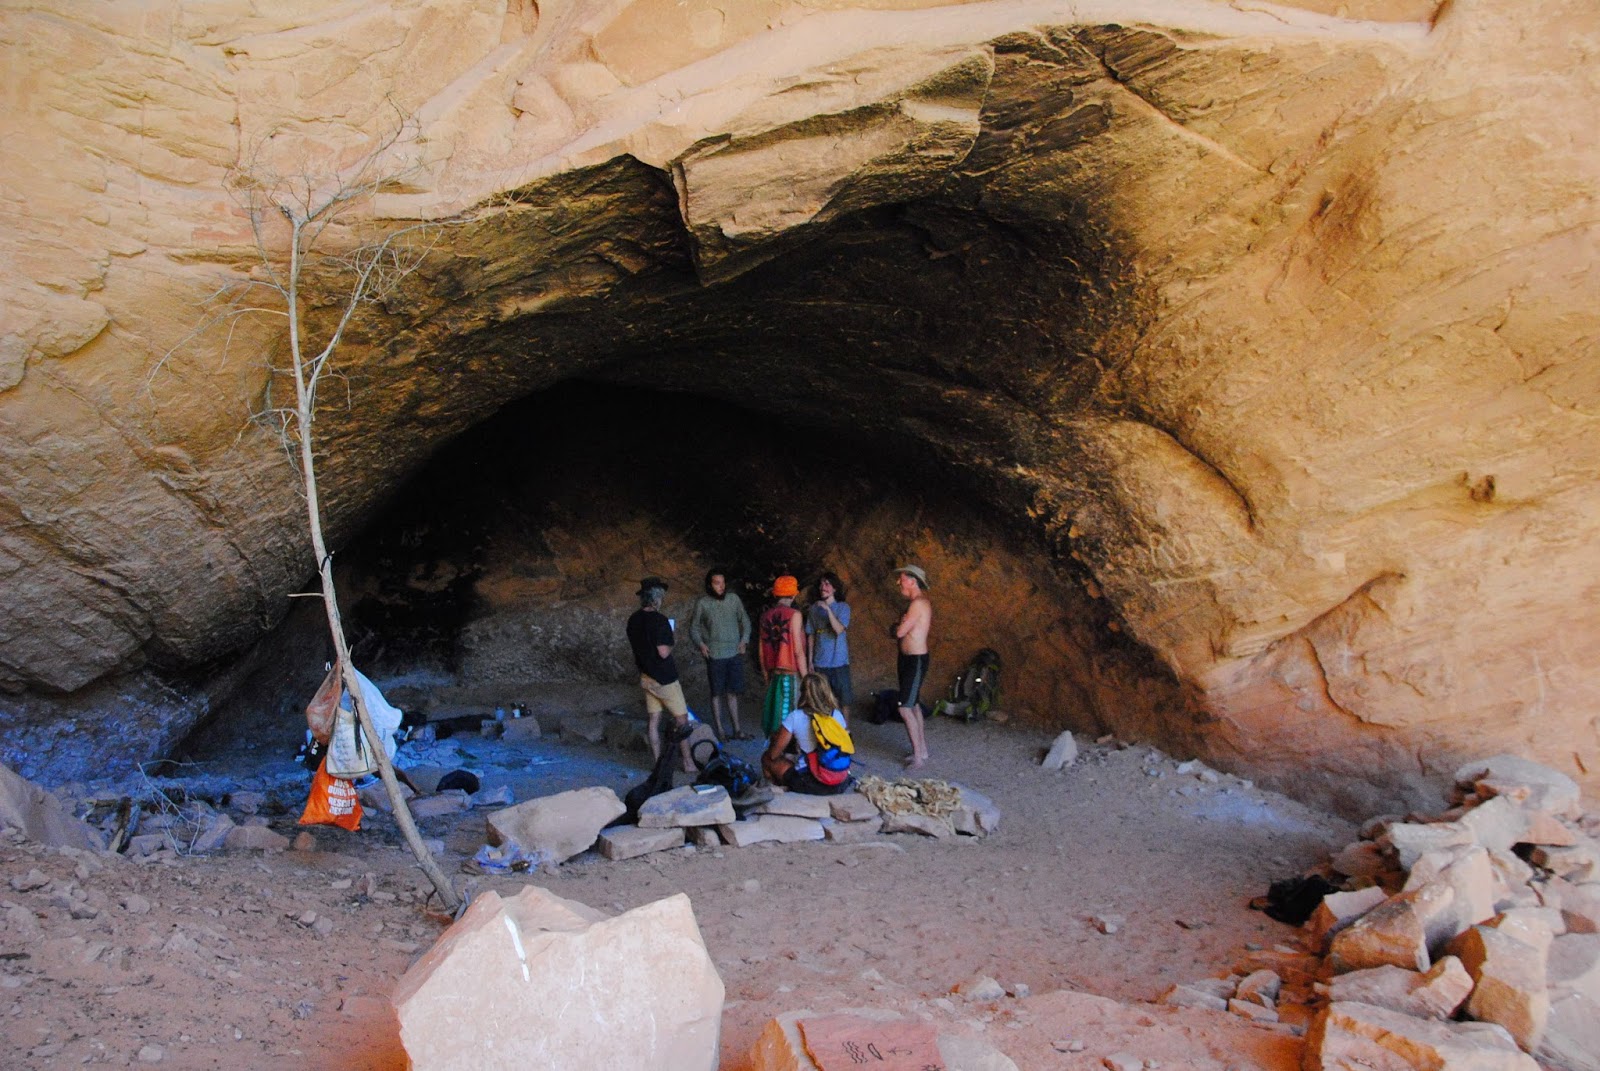 Daniel's cave in Moab, UT